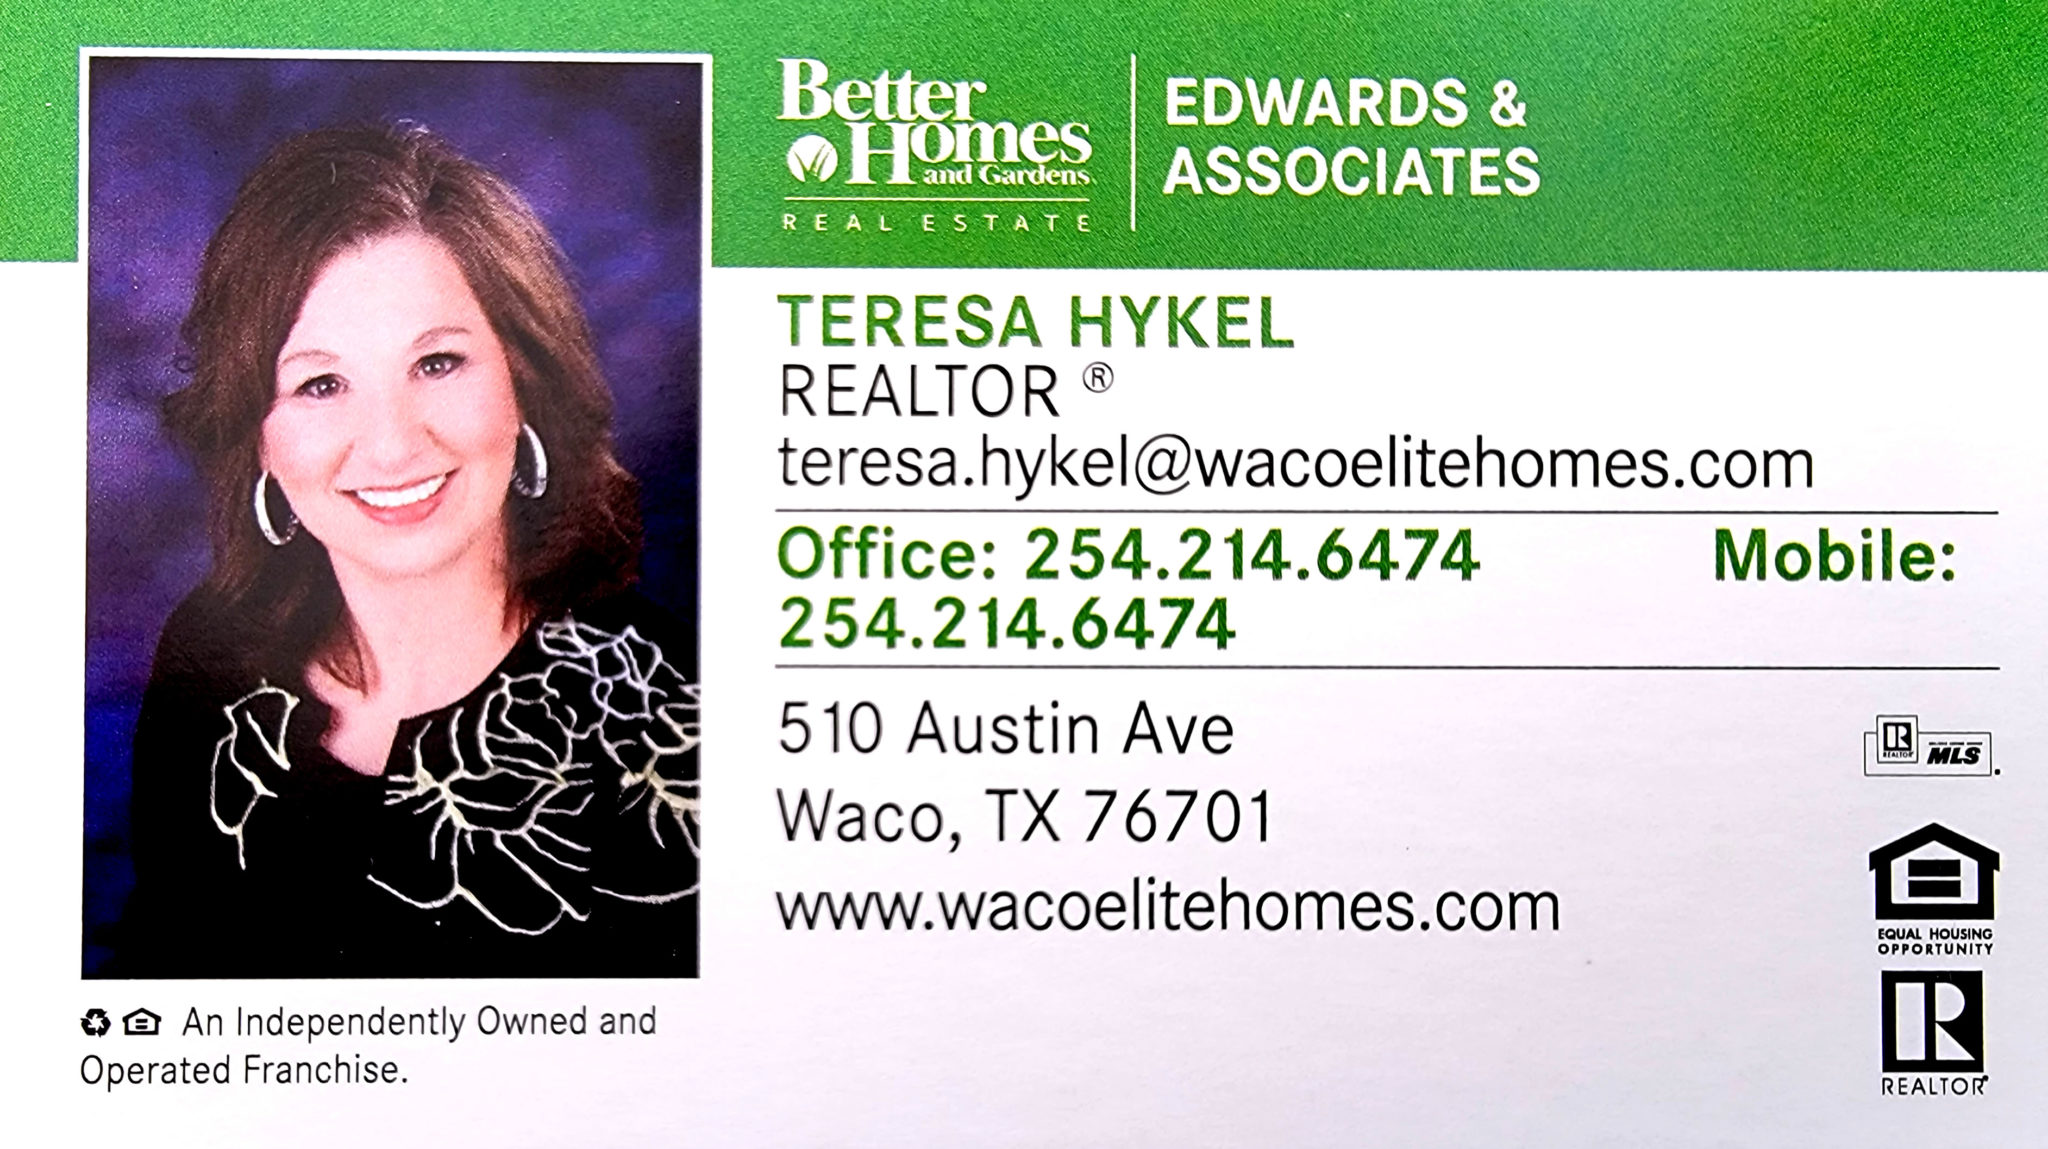 Teresa Hykel - Home & Garden Real Estate Waco, Texas Realtor